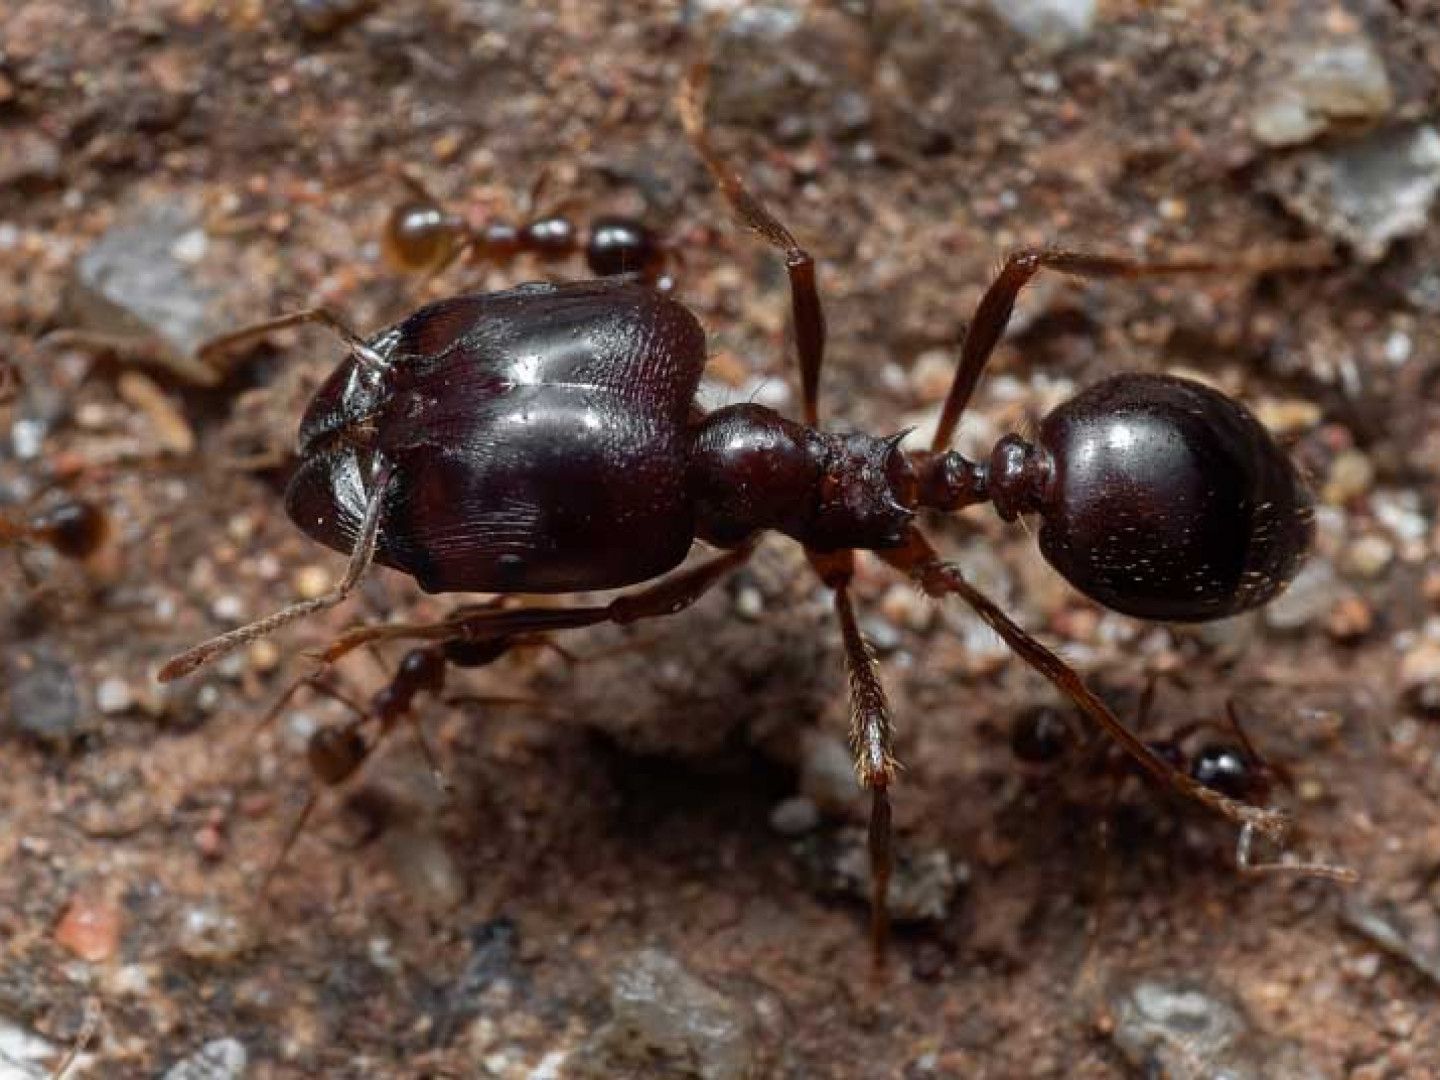 Big ant